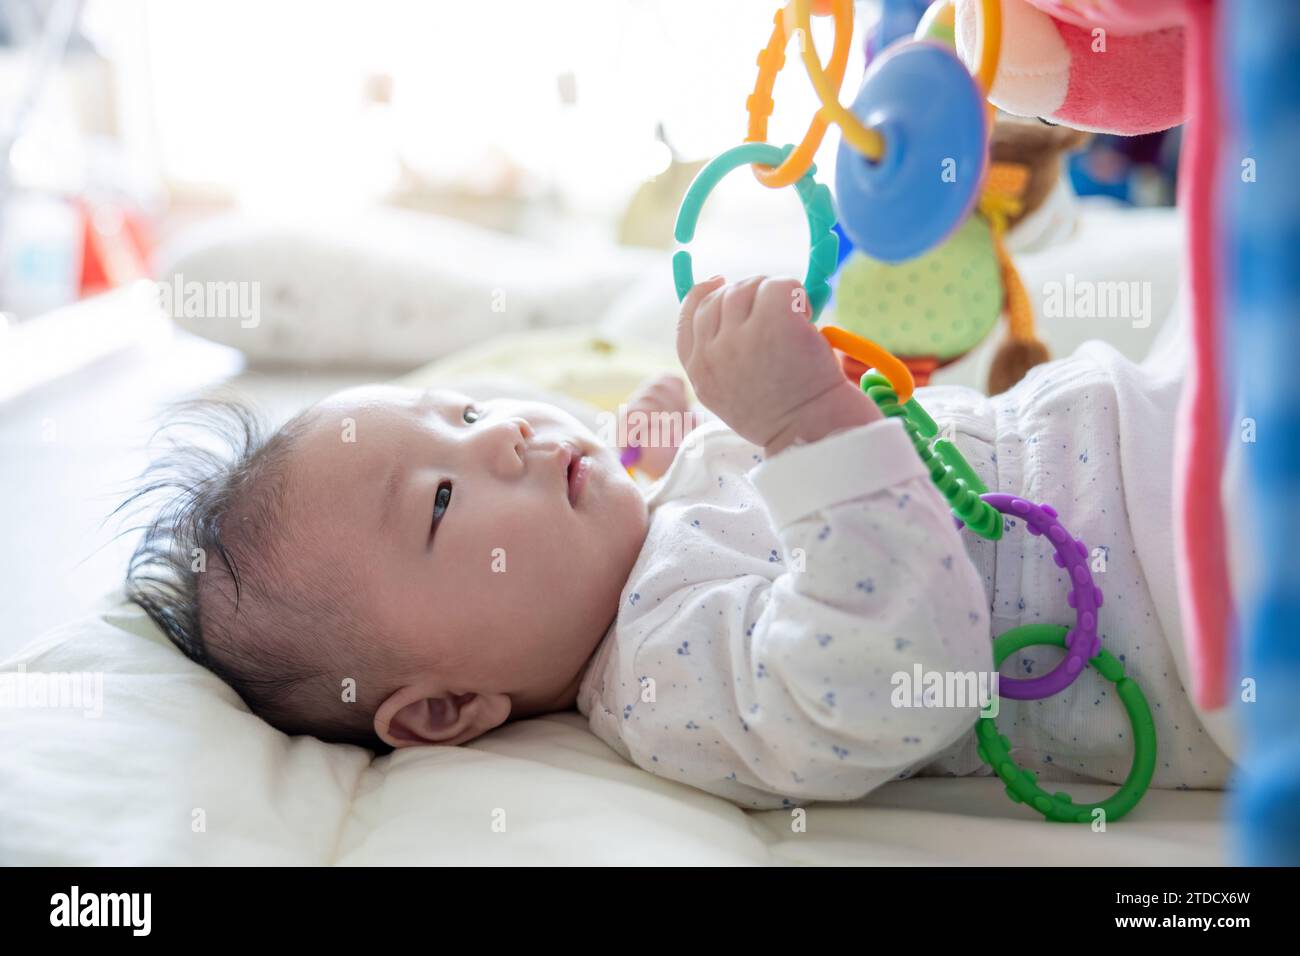 Un bébé qui n'a que quelques jours est allongé à côté d'une fenêtre ensoleillée et joue avec des jouets Banque D'Images